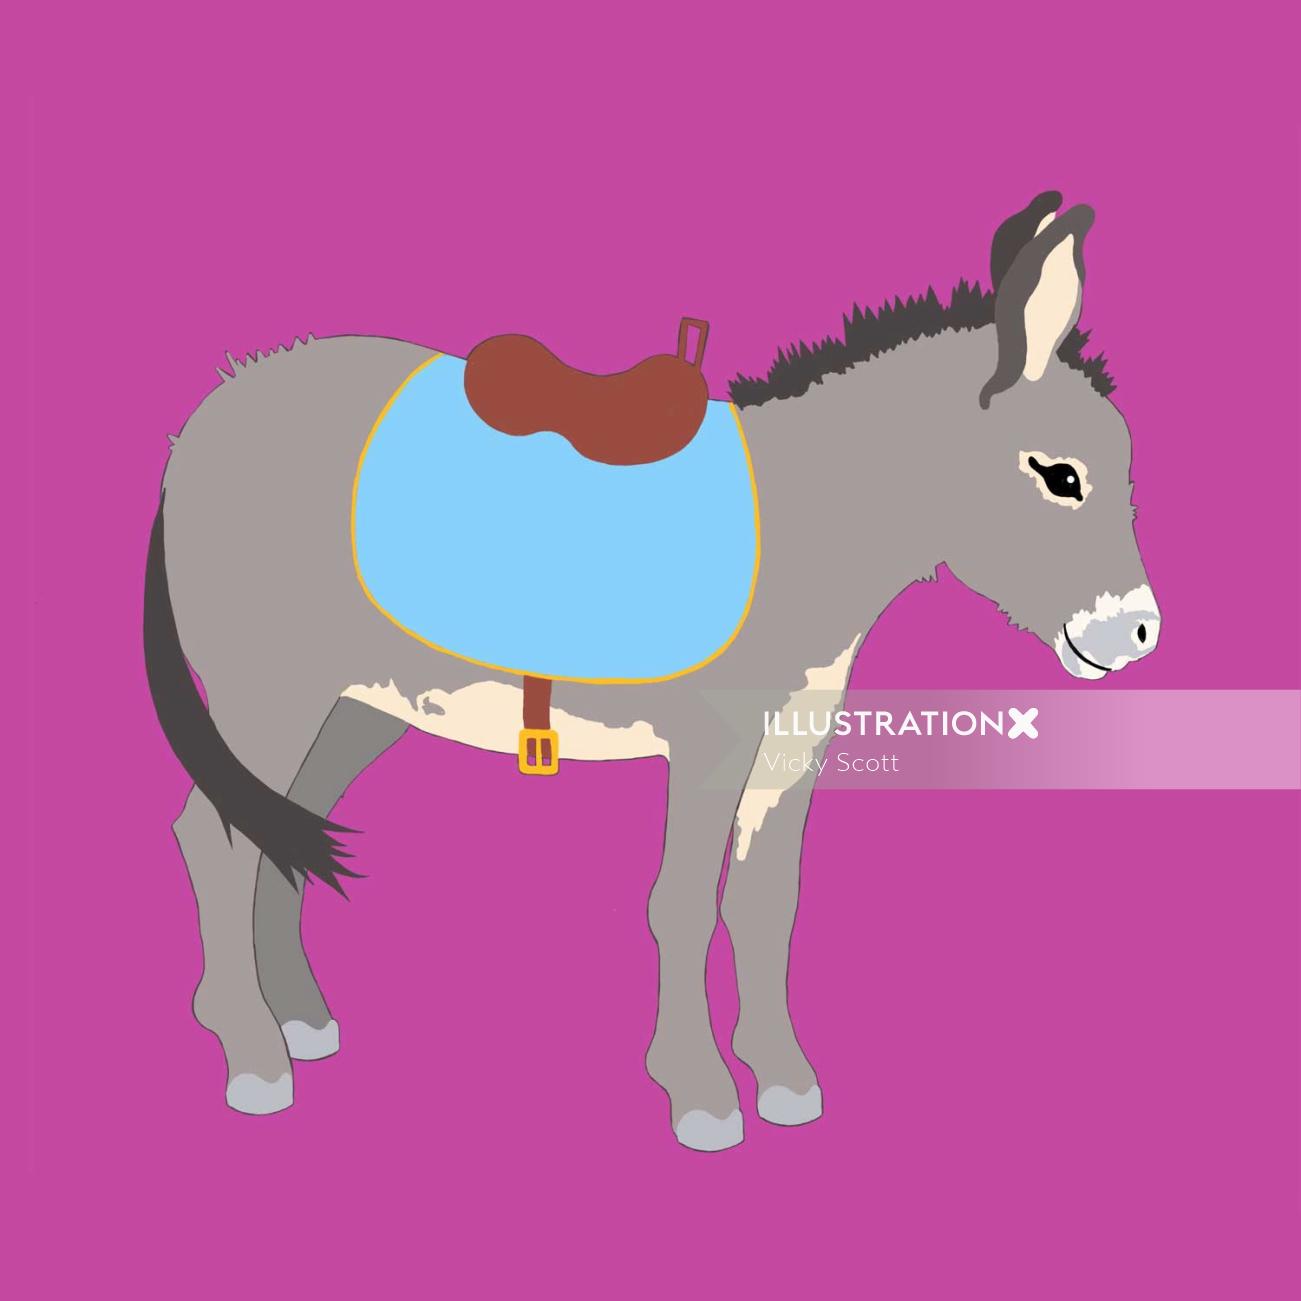 donkey, saddle